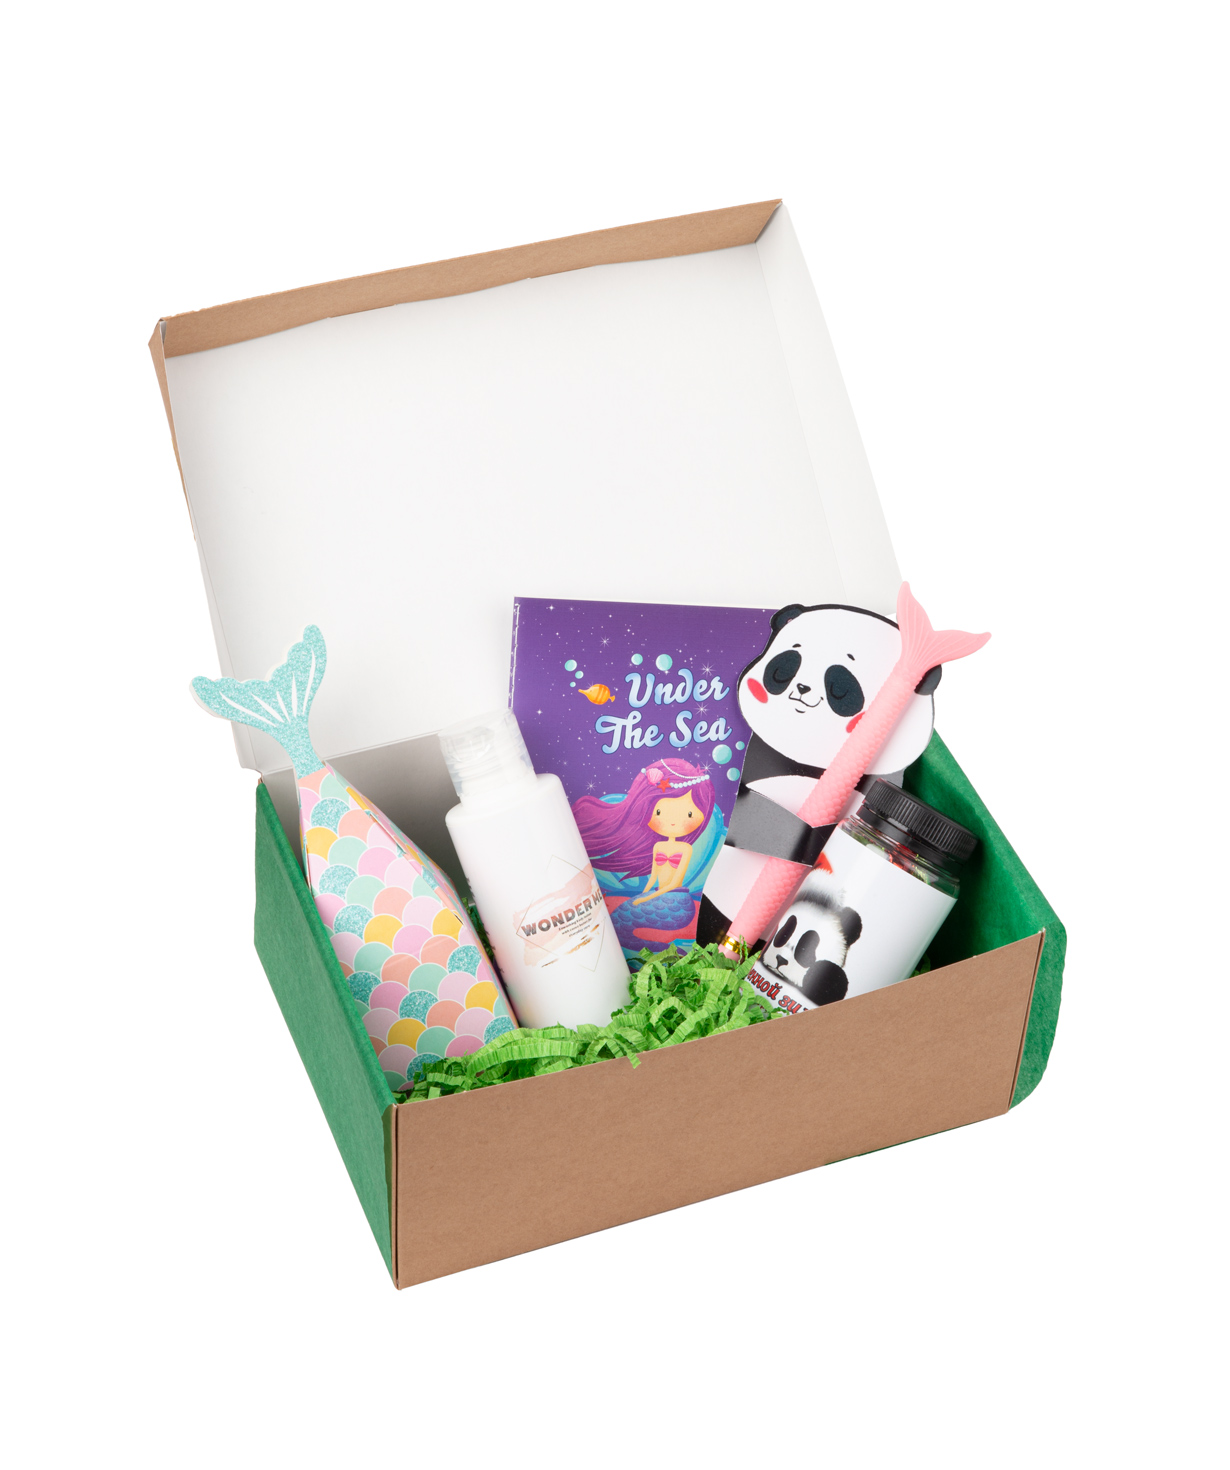 Gift box `Wonder Me` awesome panda